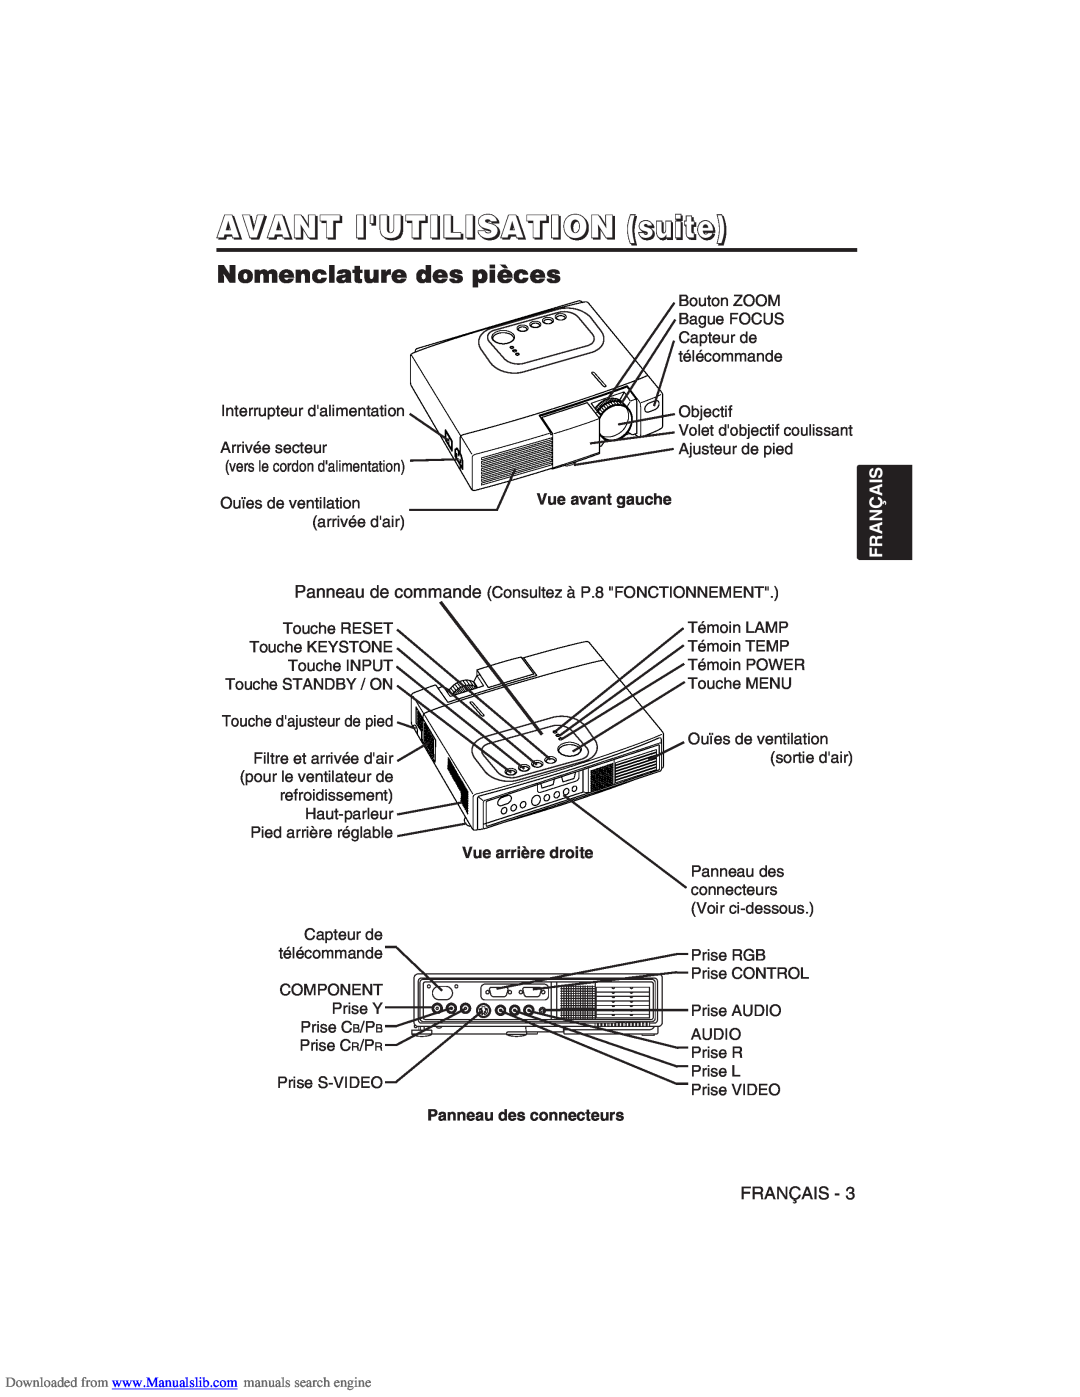 Hitachi CP-X275W user manual AVANT IUTILISATION suite, Nomenclature des pièces, Français 